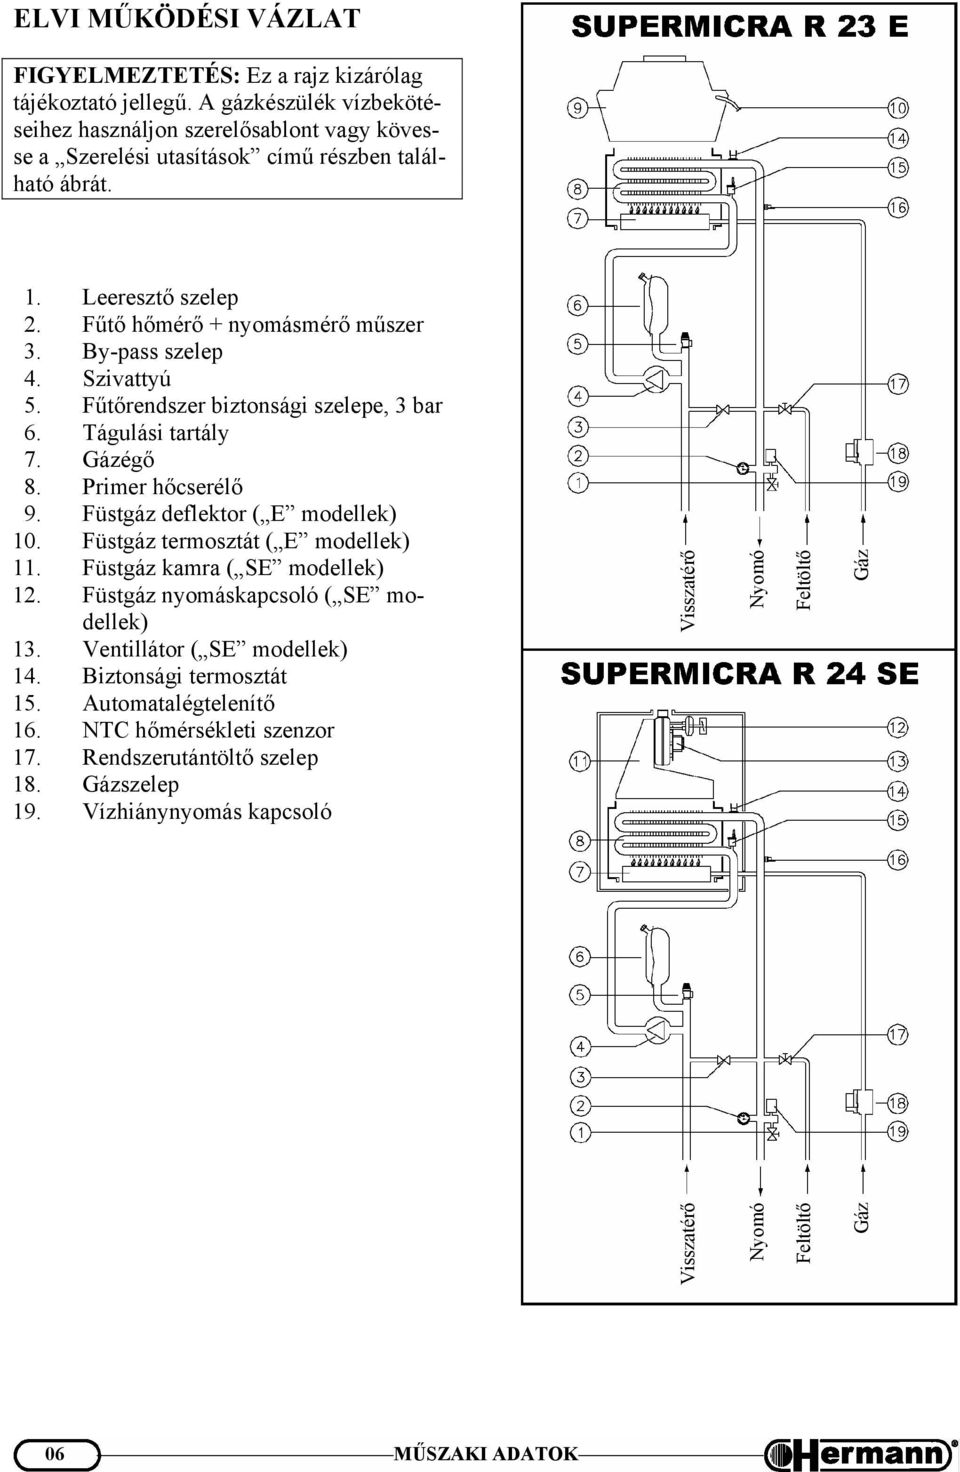 SUPERMICRA R 23E 24SE típusú gázkészülékek gépkönyve - PDF Ingyenes letöltés